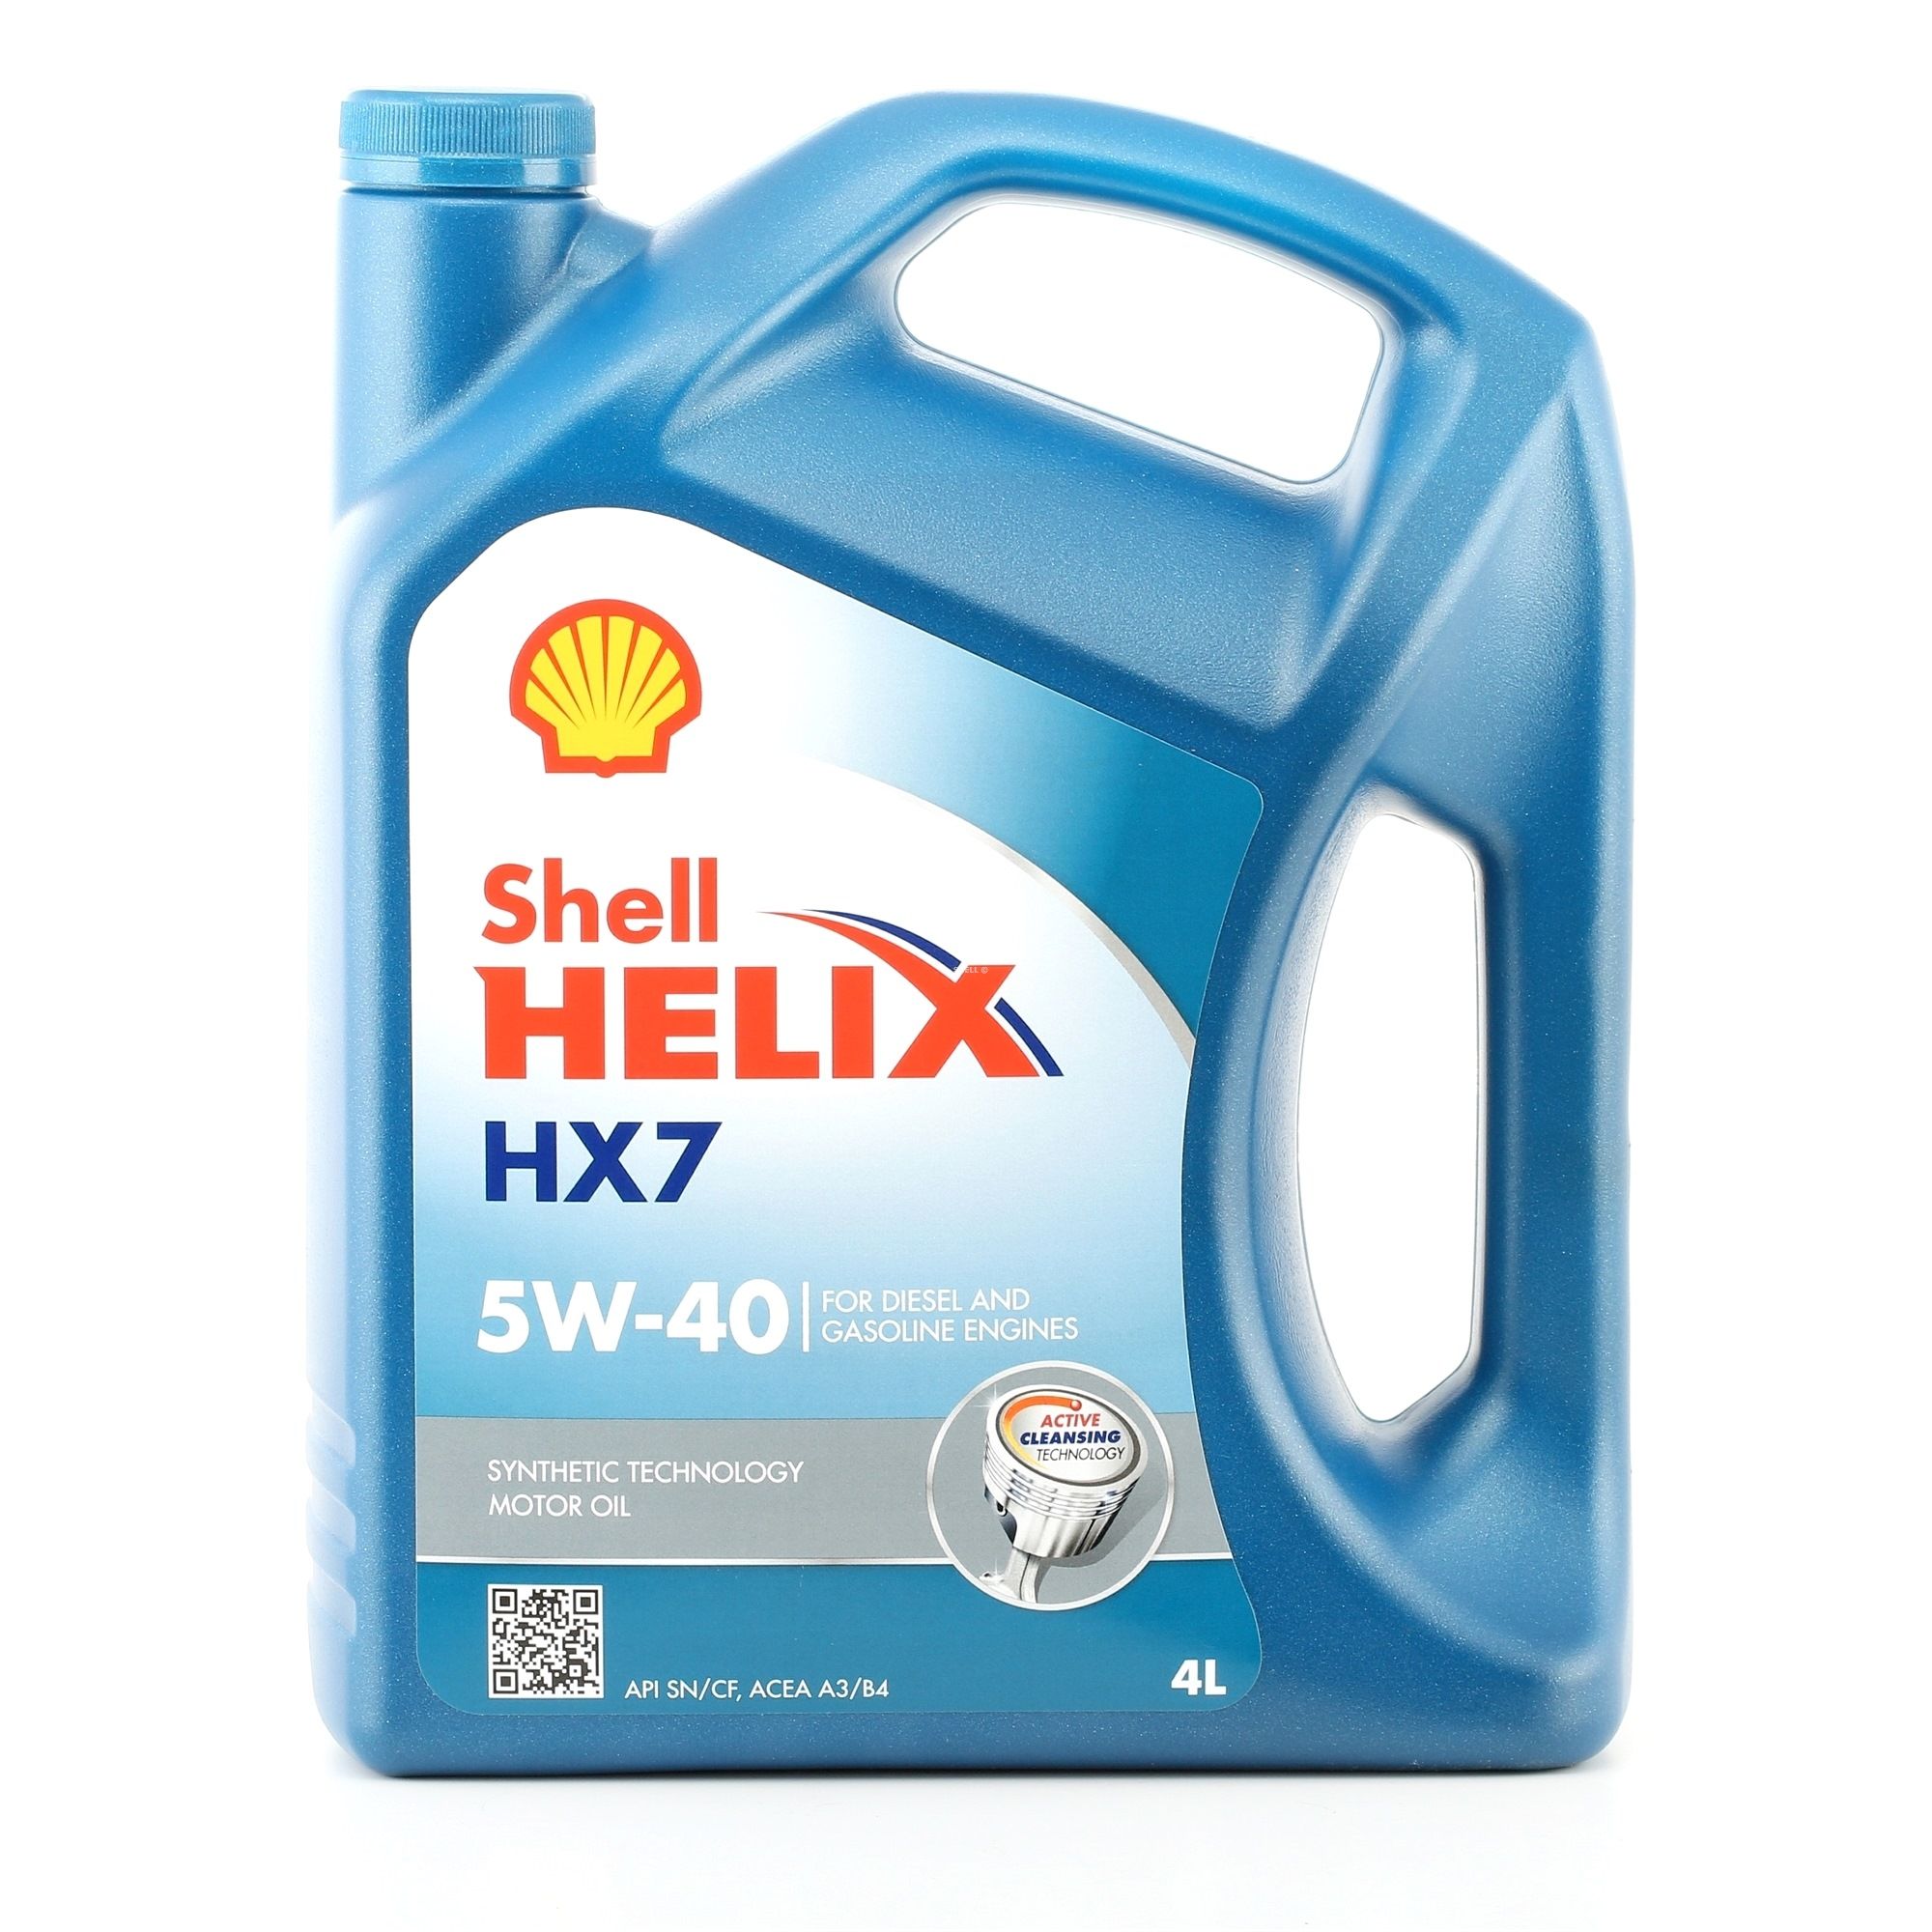 550046284 SHELL Helix, HX7 5W-40, 4L, Deels synthetische olie Motorolie 550046284 koop goedkoop